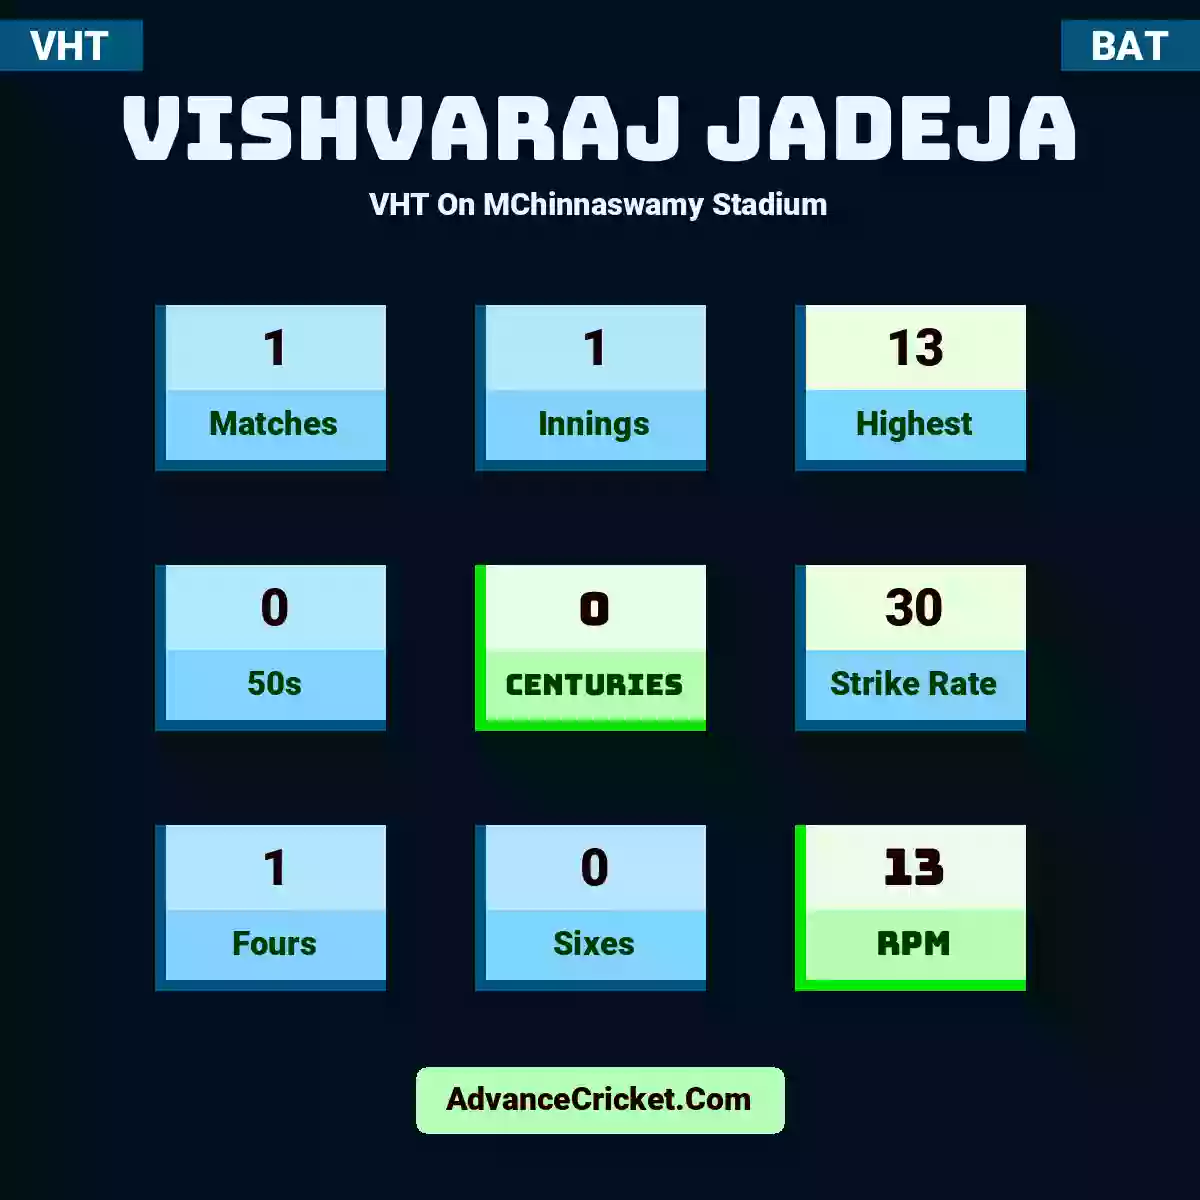 Vishvaraj Jadeja VHT  On MChinnaswamy Stadium, Vishvaraj Jadeja played 1 matches, scored 13 runs as highest, 0 half-centuries, and 0 centuries, with a strike rate of 30. V.Jadeja hit 1 fours and 0 sixes, with an RPM of 13.